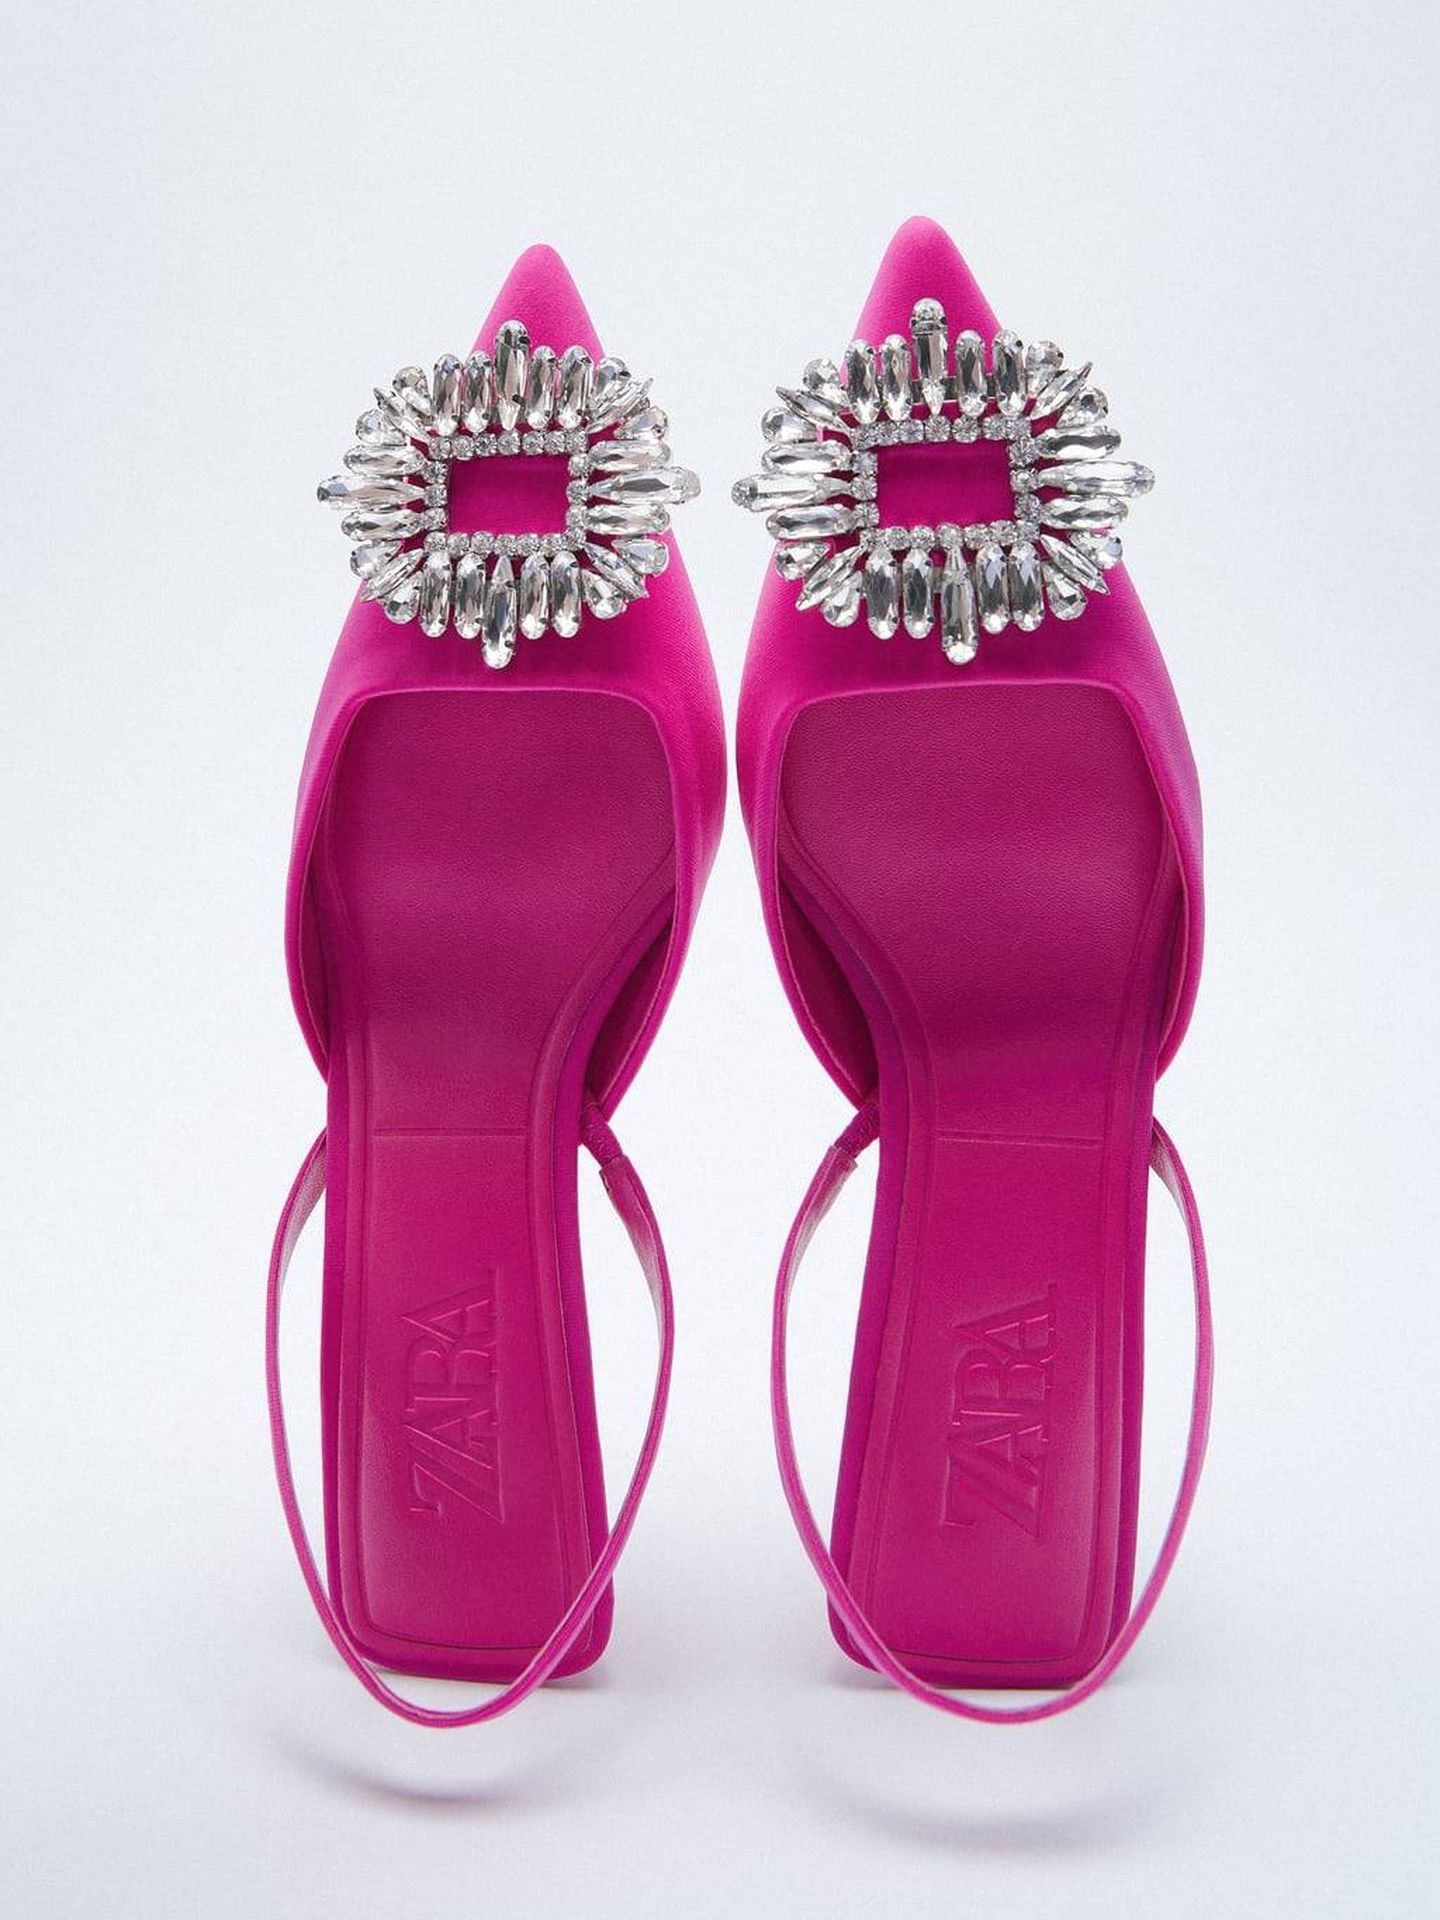 Estos mules joya de Zara visten tanto o más que sandalias strappy de tacón